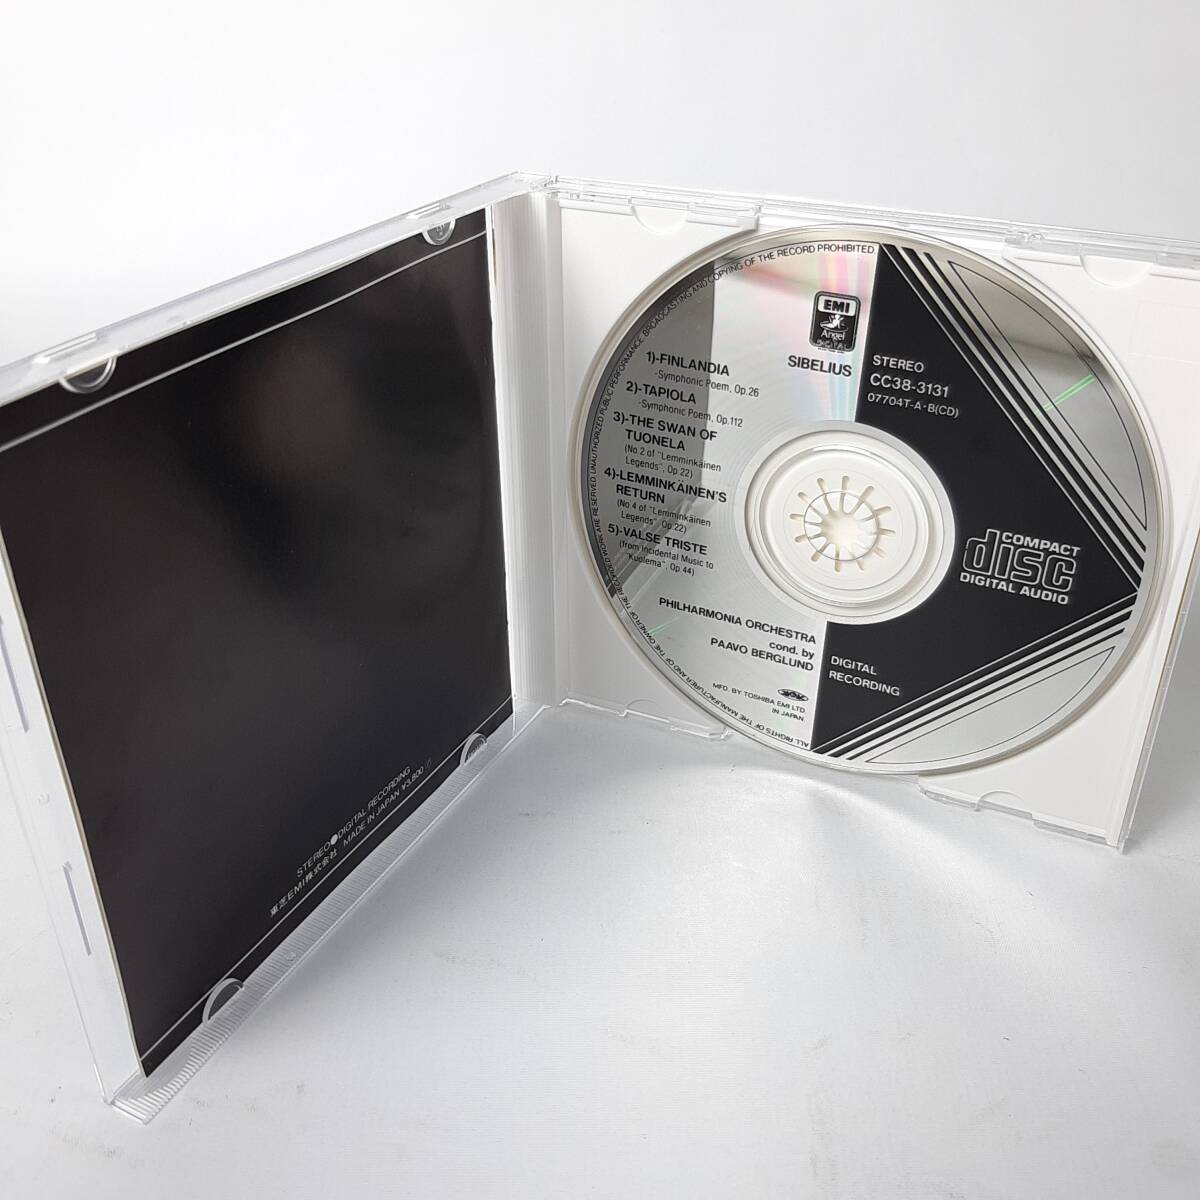 MA14【EMI初期黒レーベル/3800円盤】ベルグルンド / シベリウス:フィンランディア CD_画像3